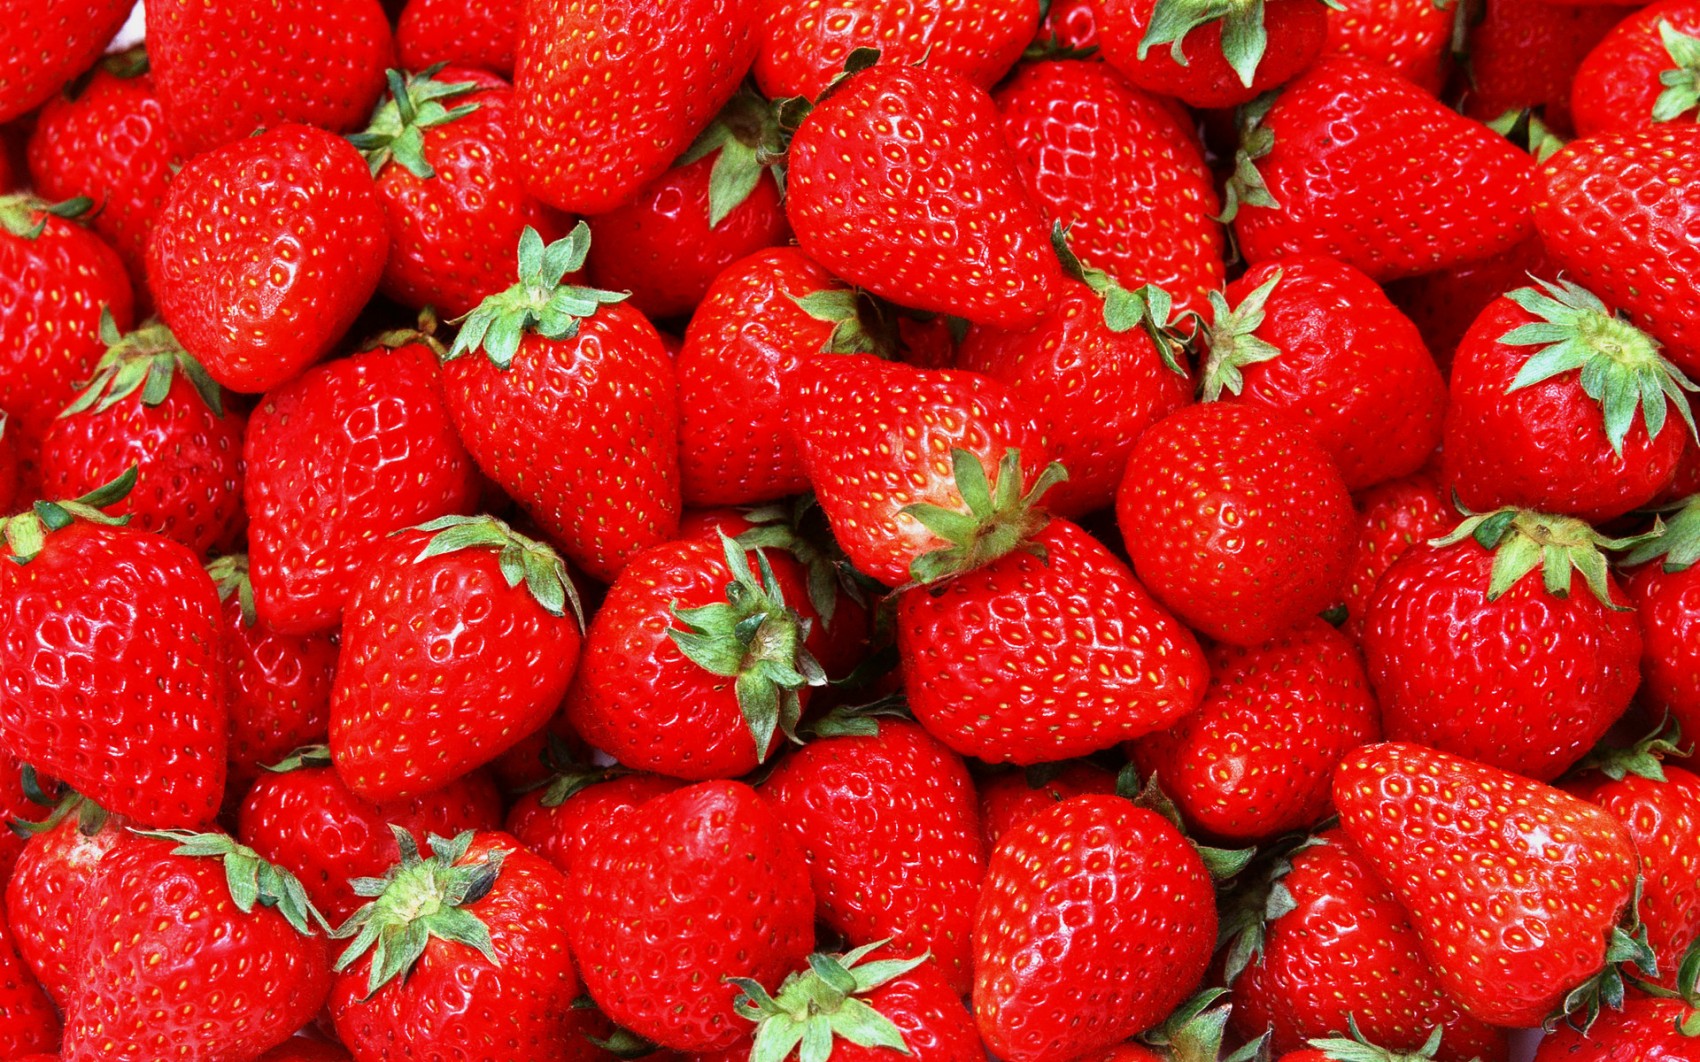    Favorite food? Strawberries.   